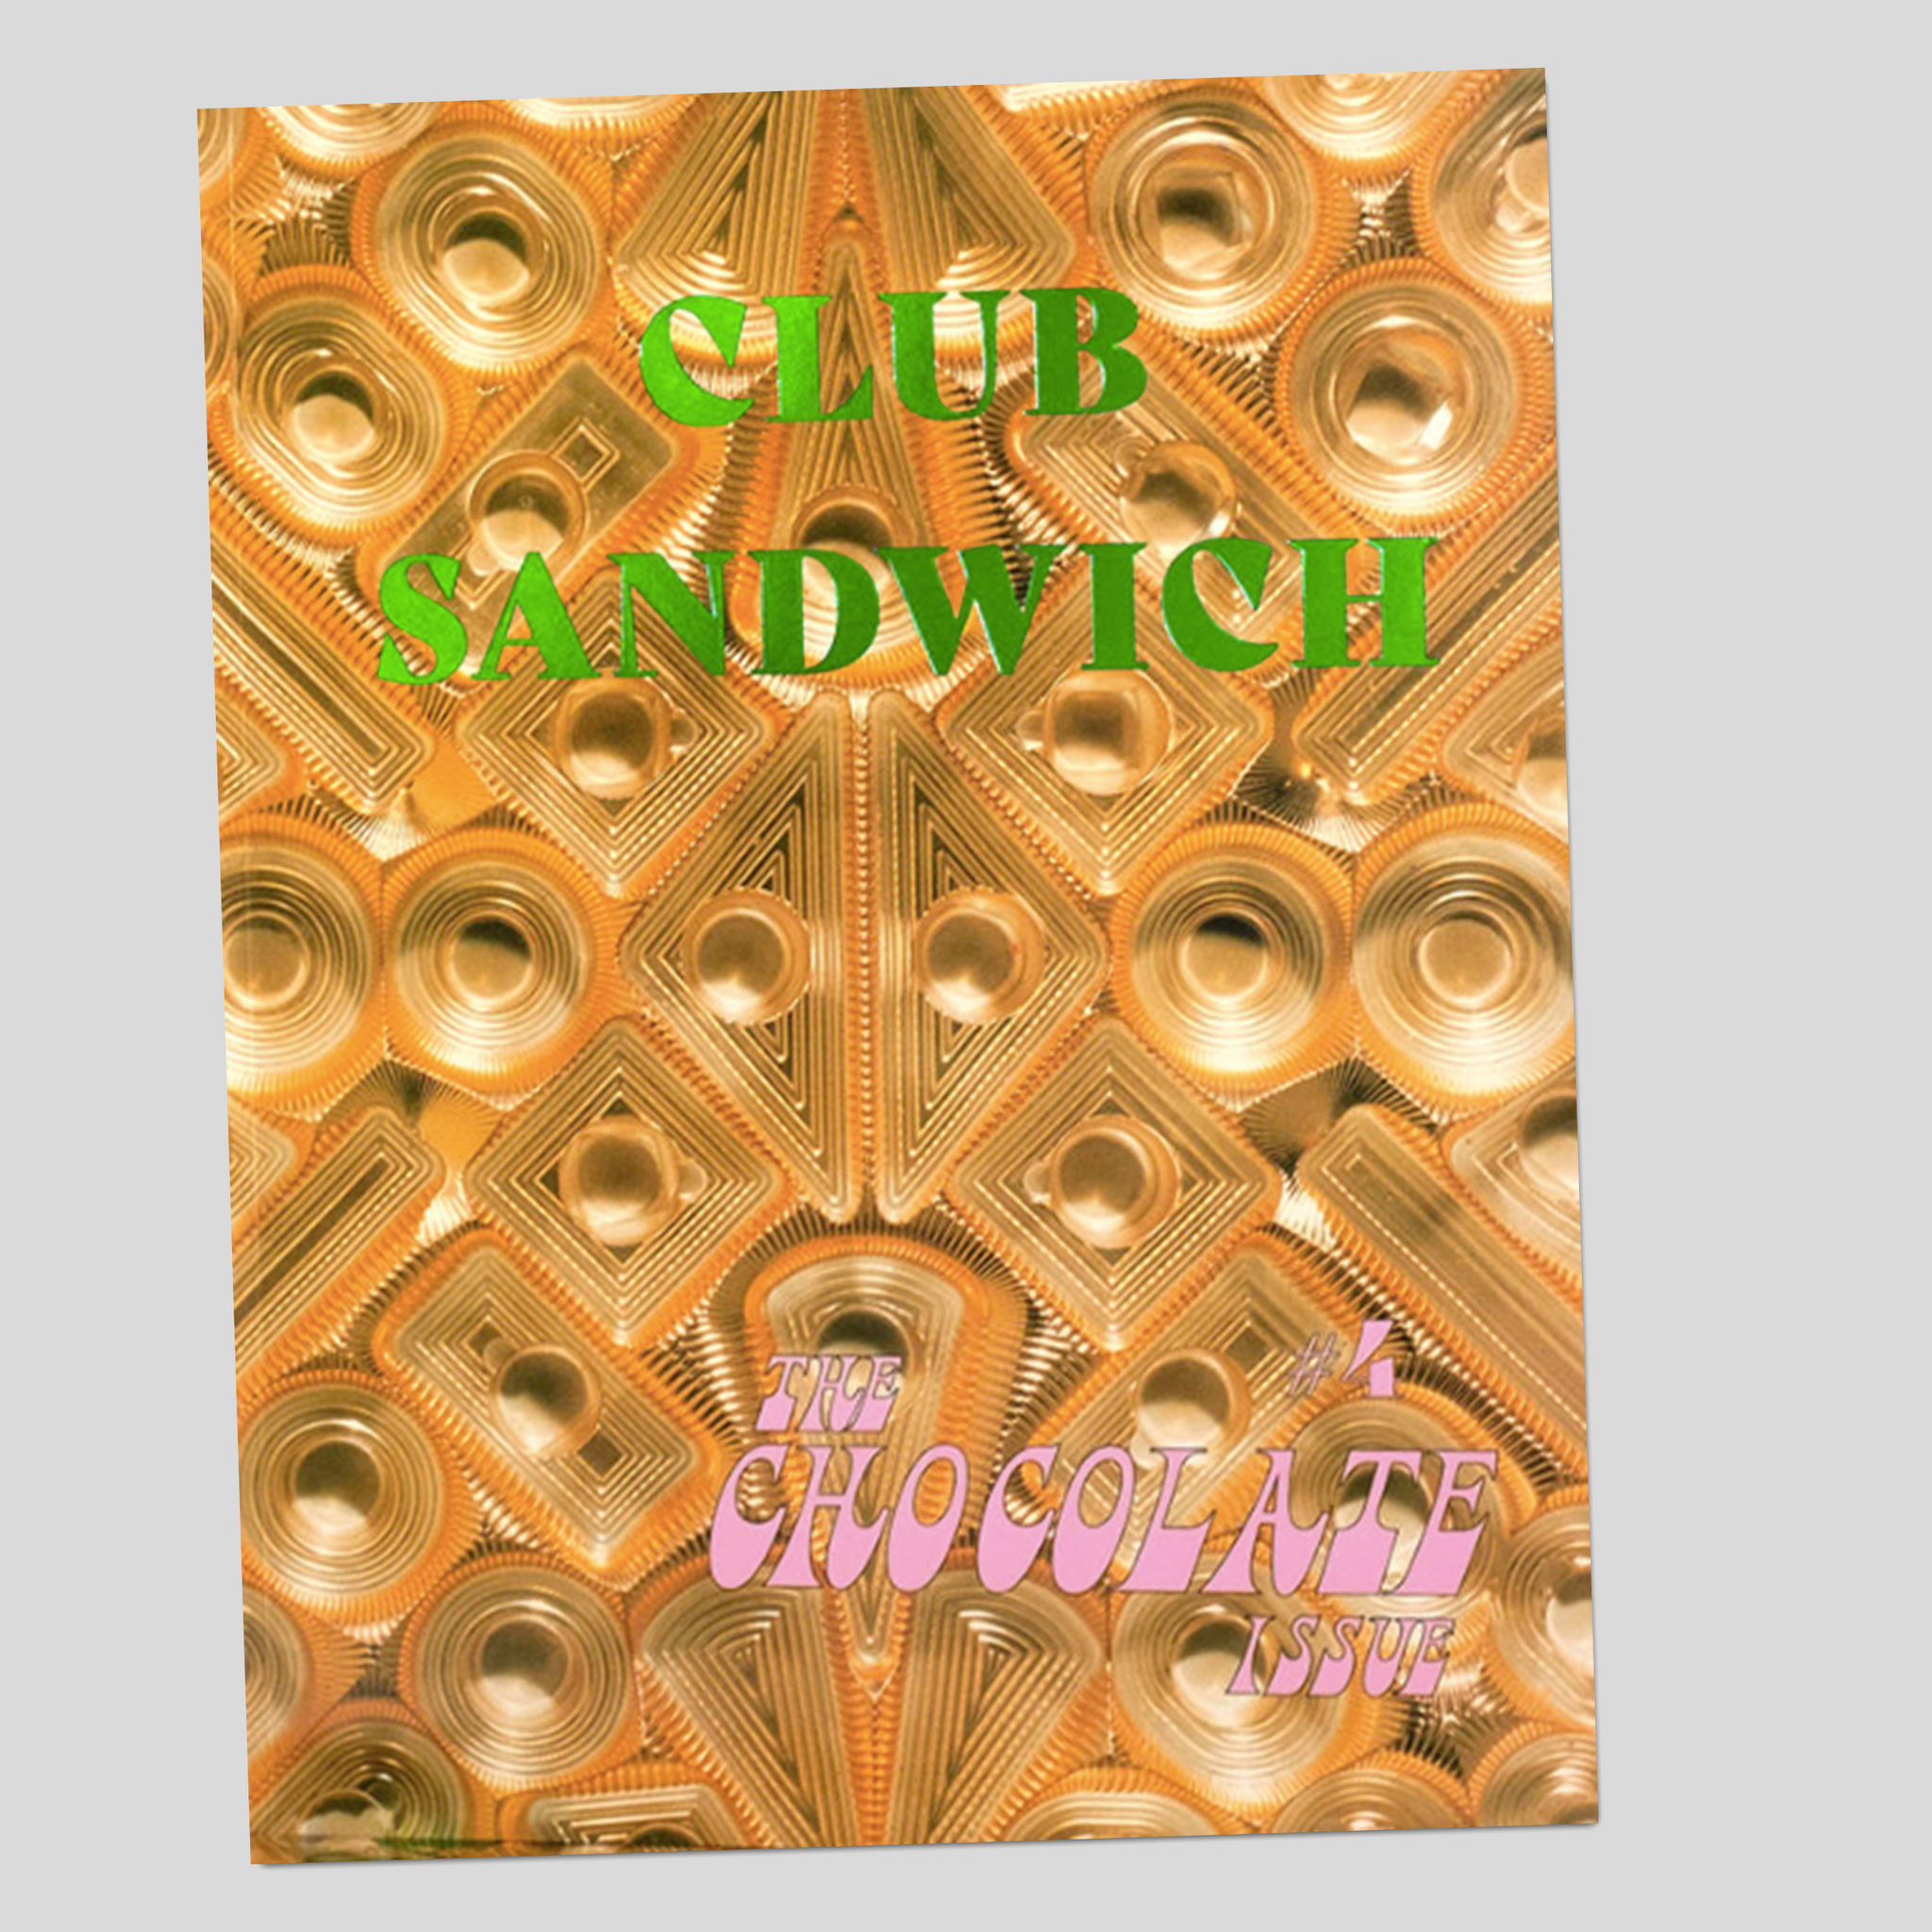 Club Sandwich #4